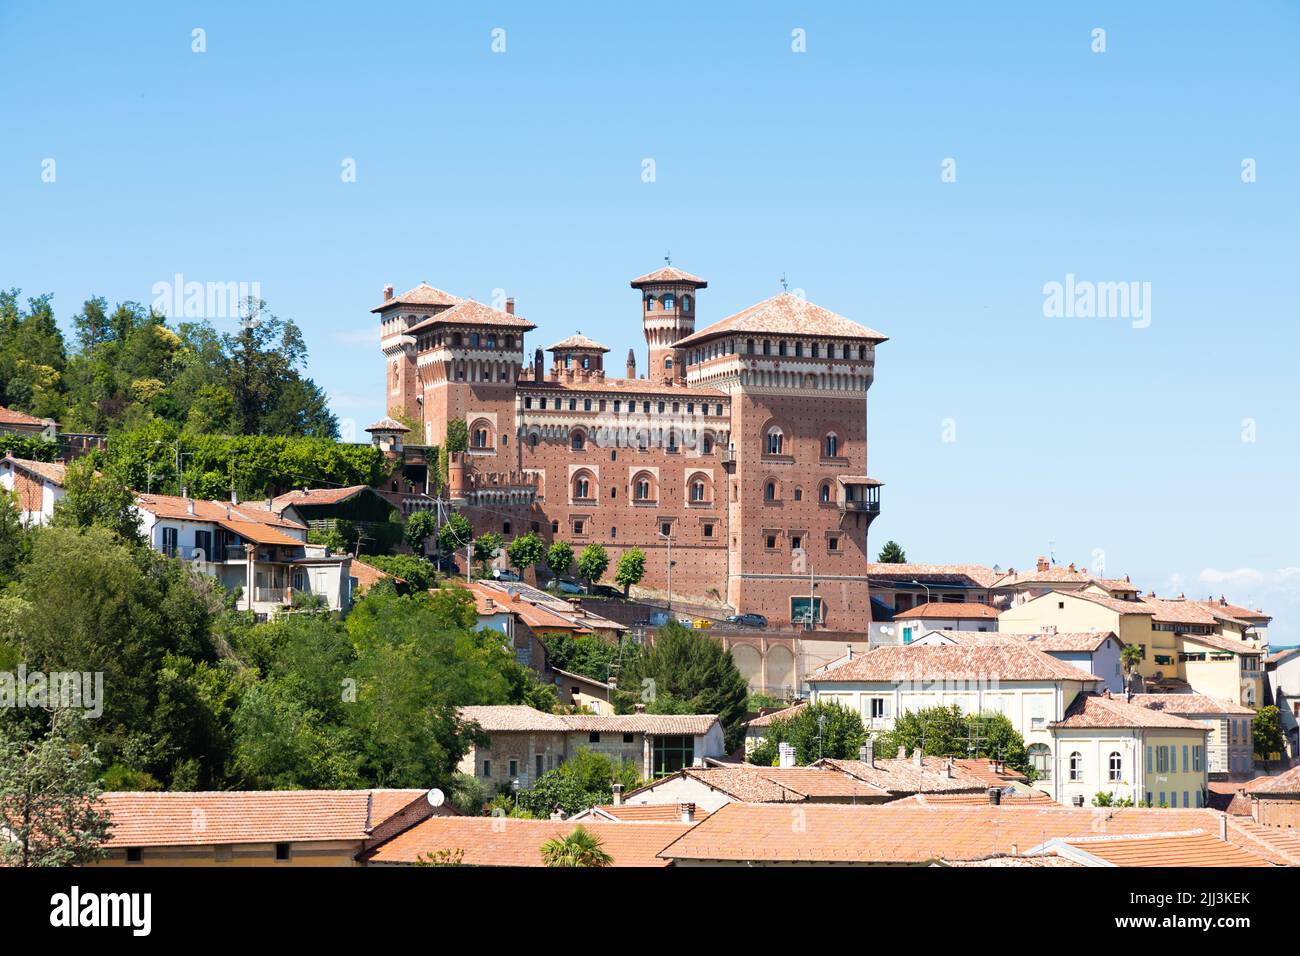 Cereseto, Italy - circa August 2021: Cereseto Castle - Castello di Cereseto - located in Monferrato area in Piedmont region, Italy Stock Photo